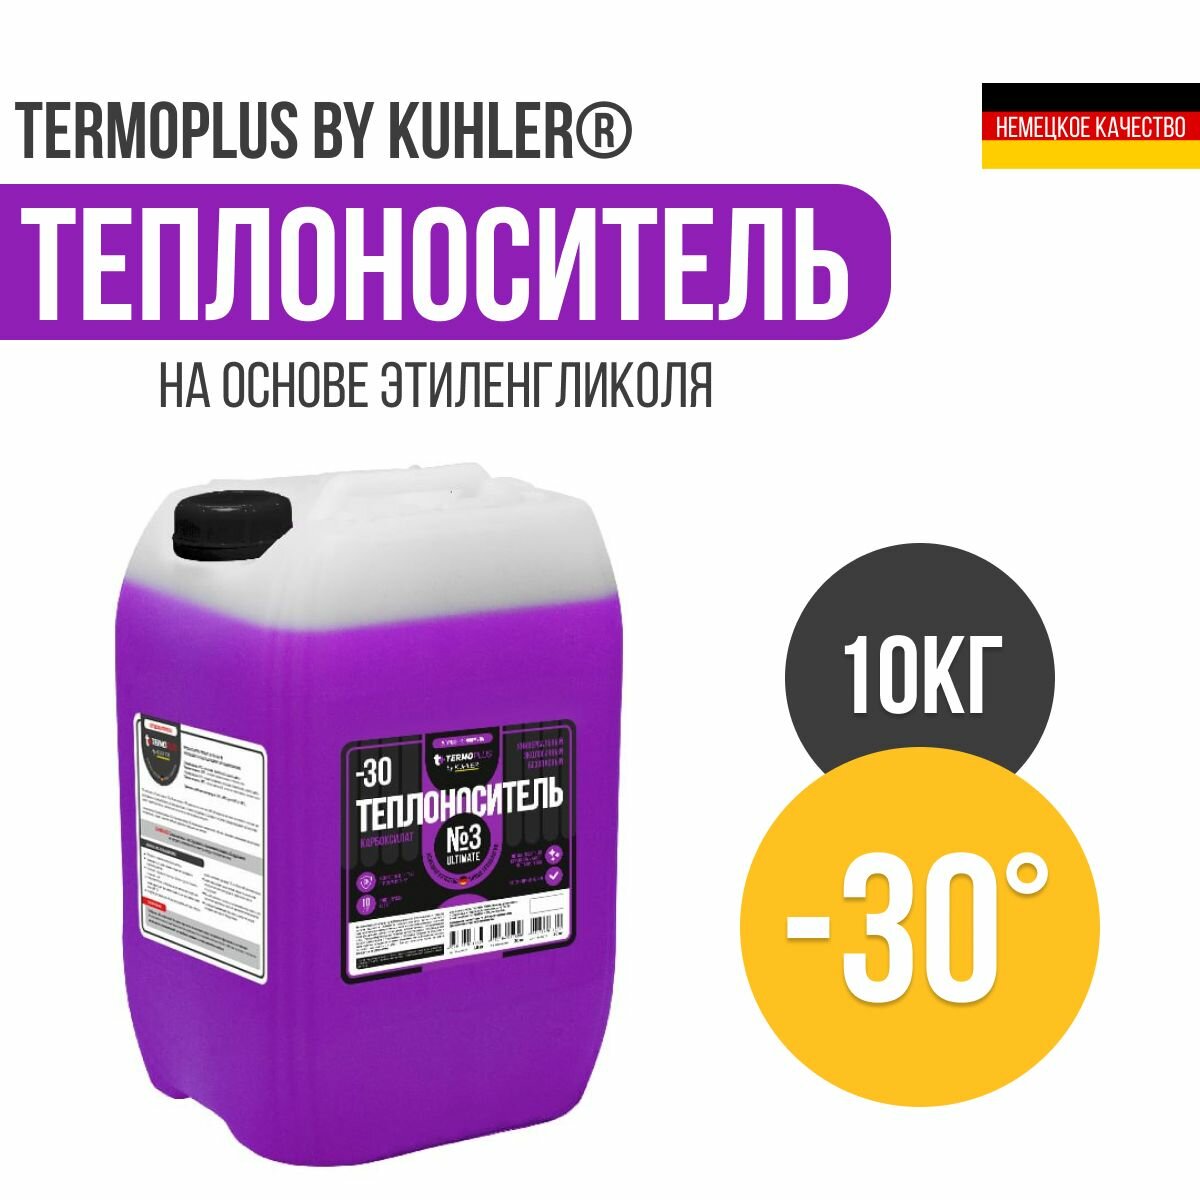 Теплоноситель №3 Ultimate Теrmoplus by Kuhler карбоксилат -30 (10 кг)